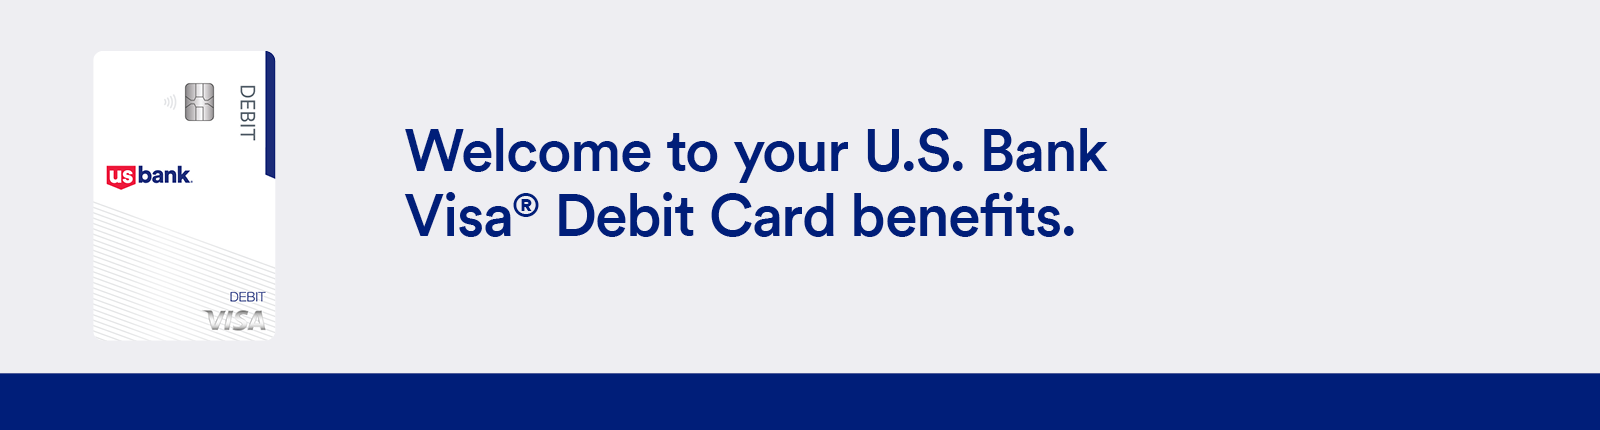 U.S. Bank Visa Debit Card